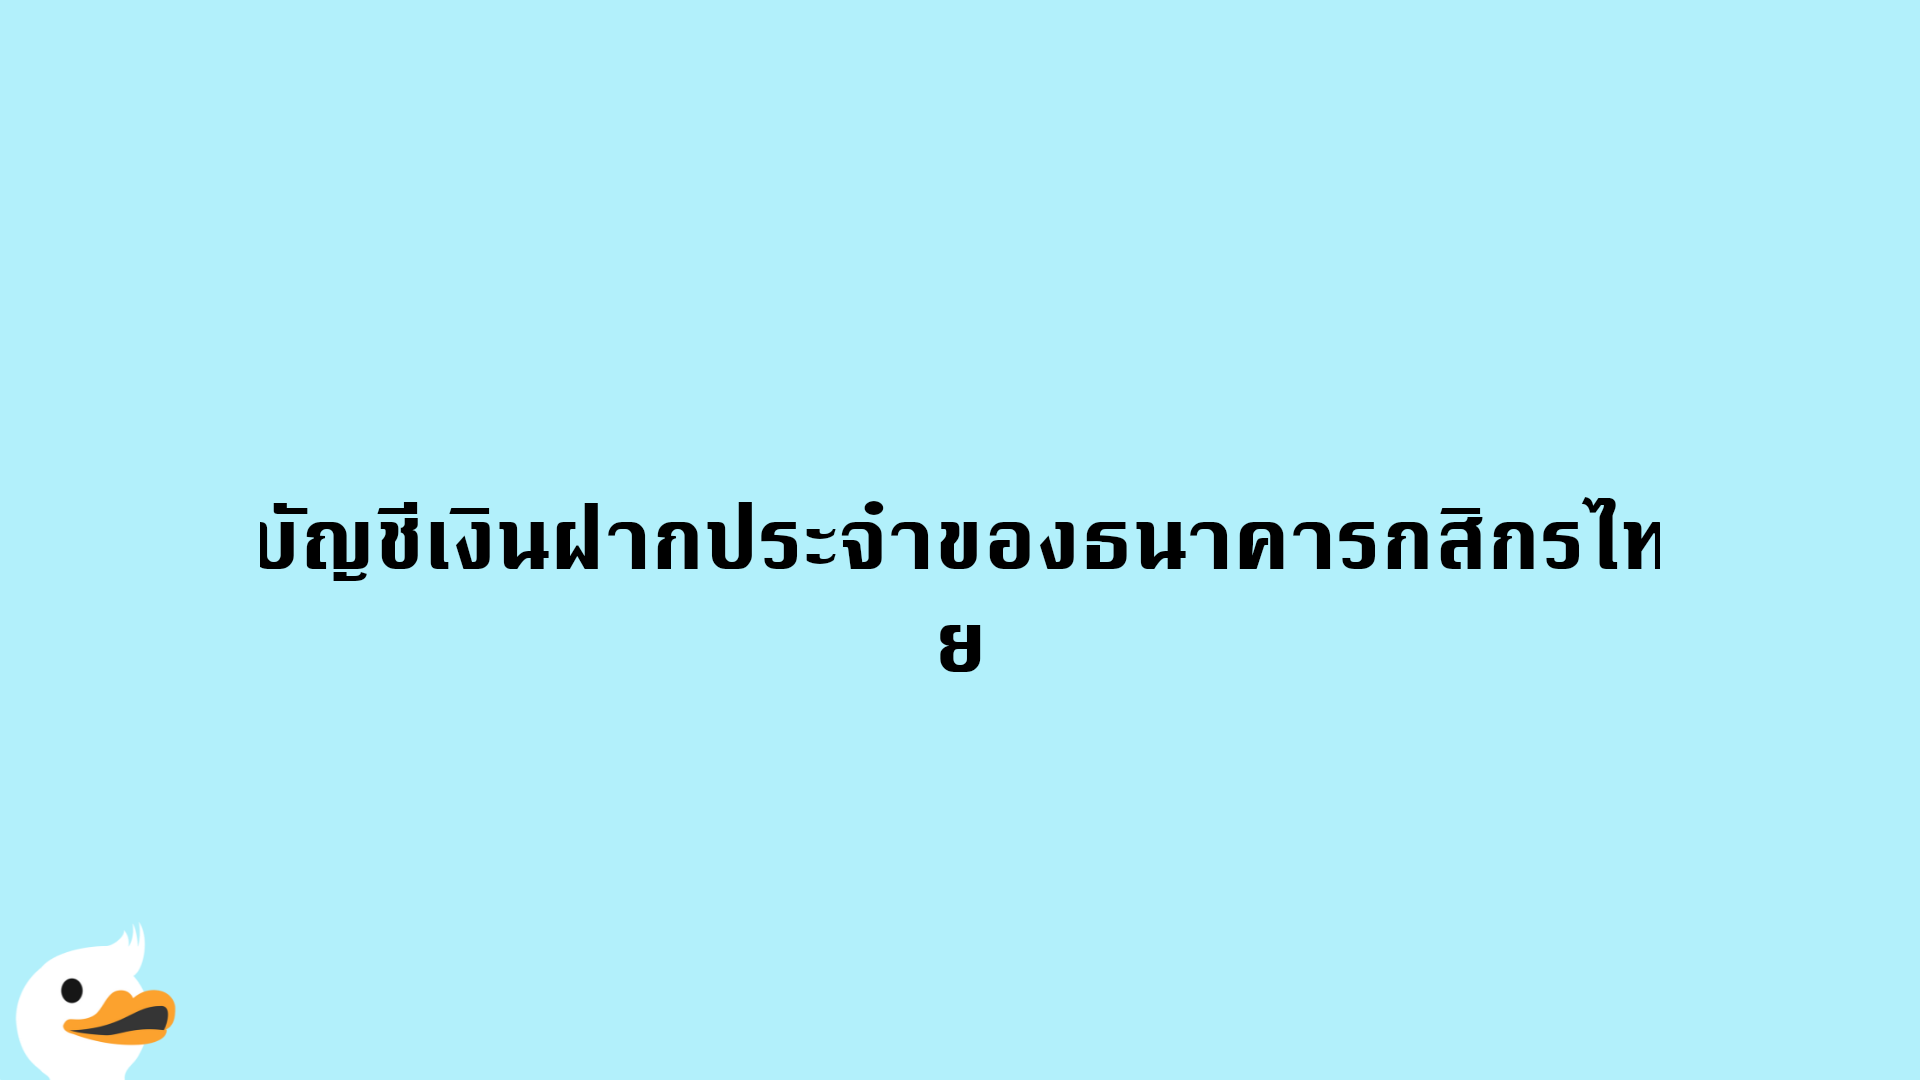 บัญชีเงินฝากประจำของธนาคารกสิกรไทย